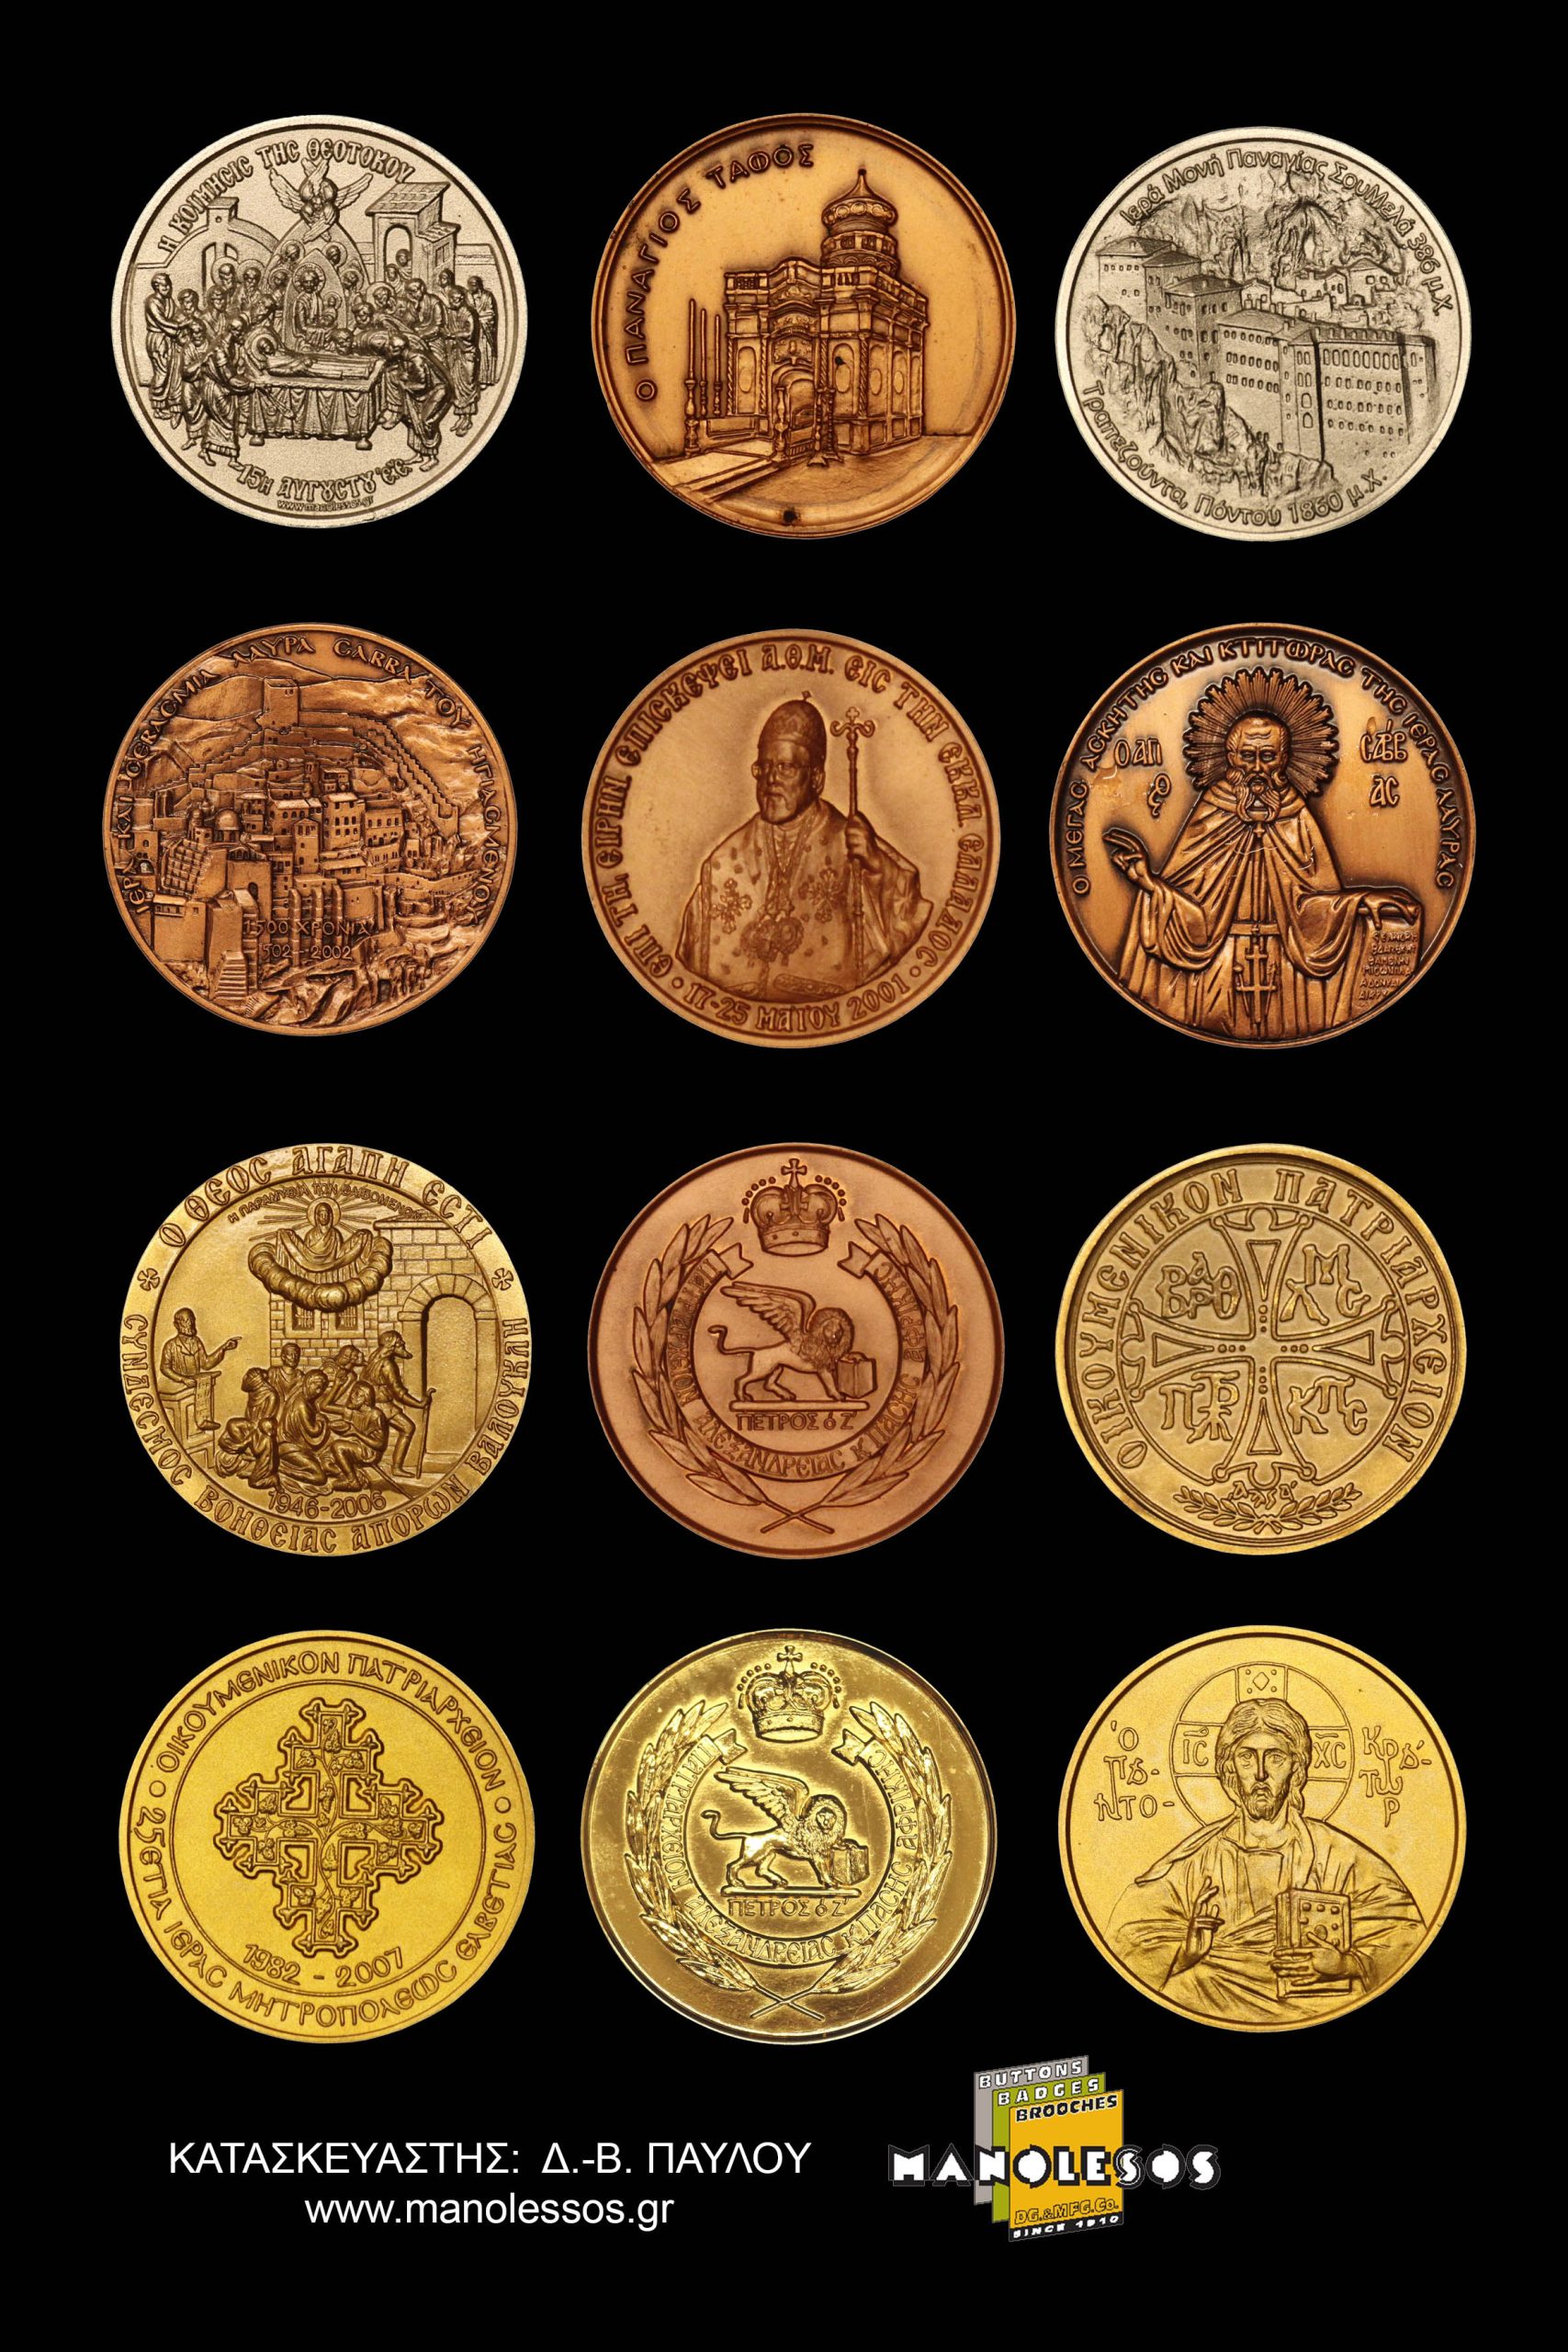 Εκκλησιαστικά Αναμνηστικά Μετάλλια από τη Μανωλέσος 001